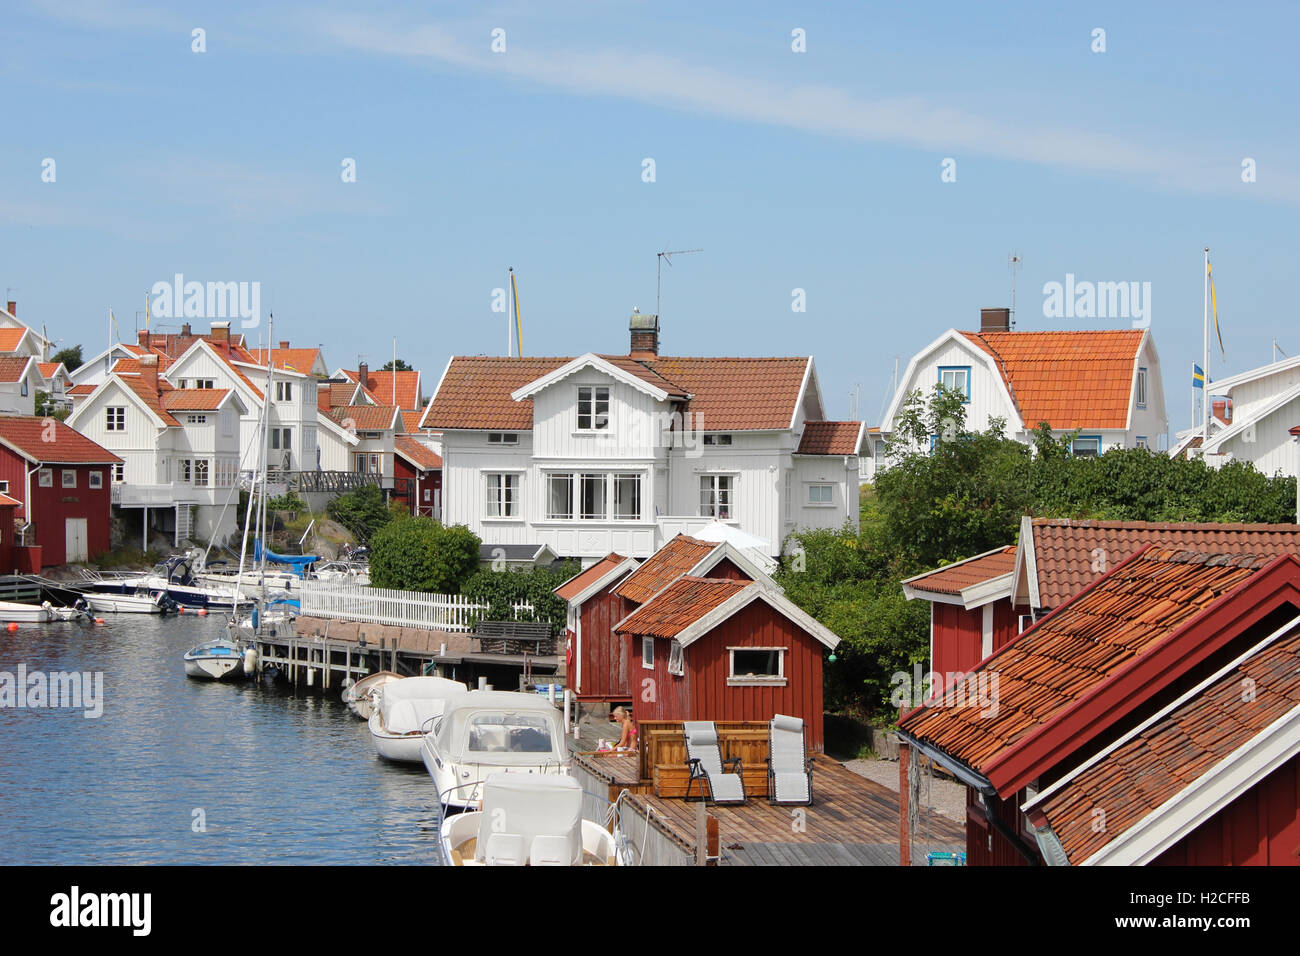 Maison de vacances chalets d'été dans le village de pêcheurs de la côte ouest en Suède, Grundsund Bohuslän Banque D'Images